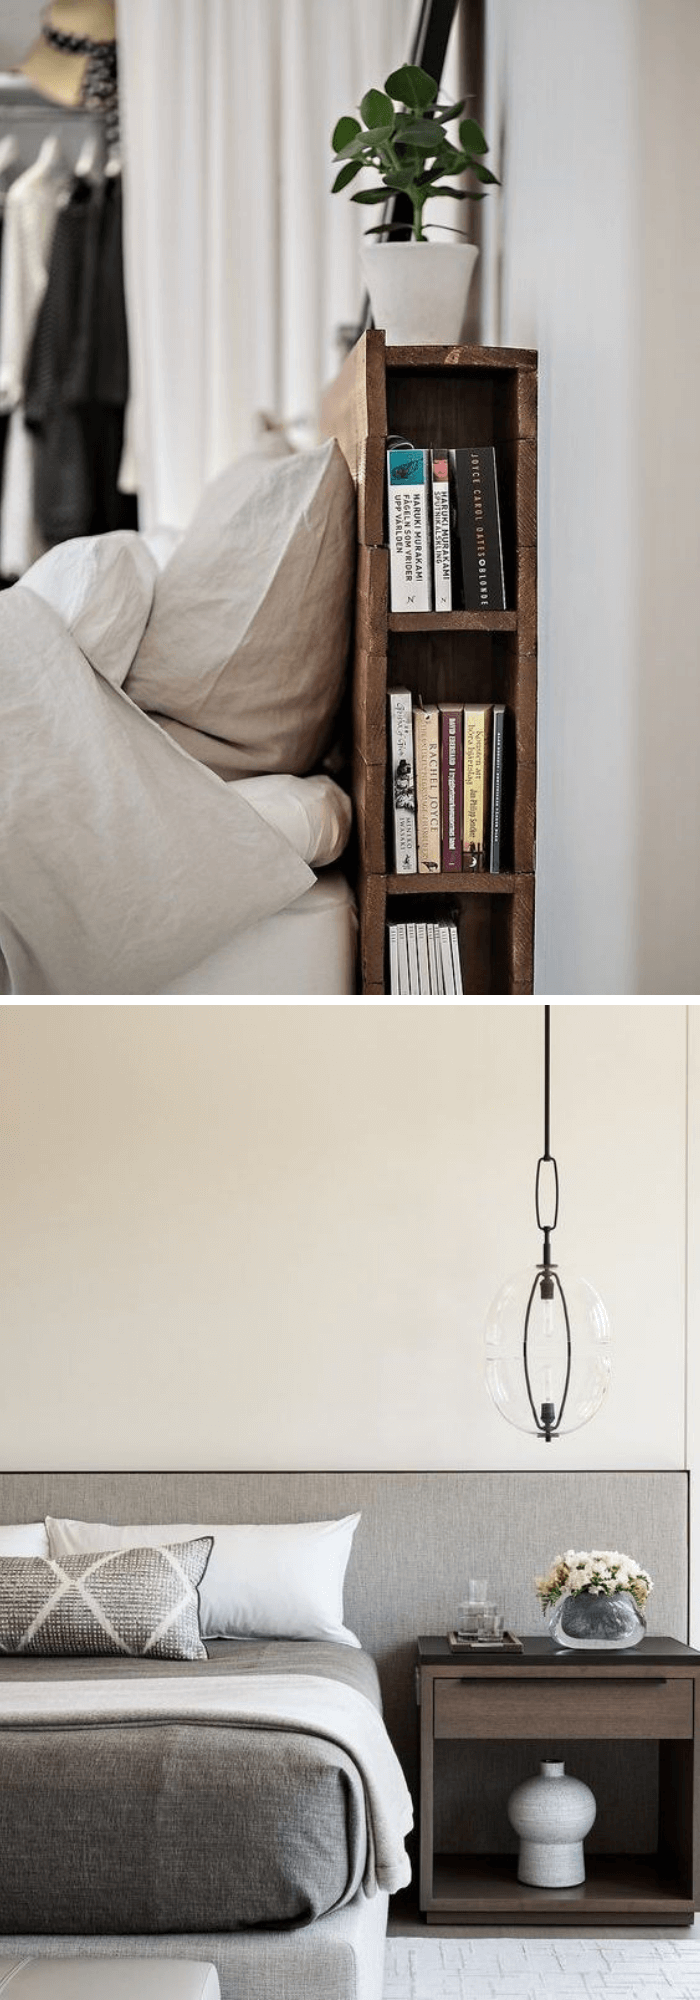 best bedroom organization ideas Headboard dreams with bookshelf